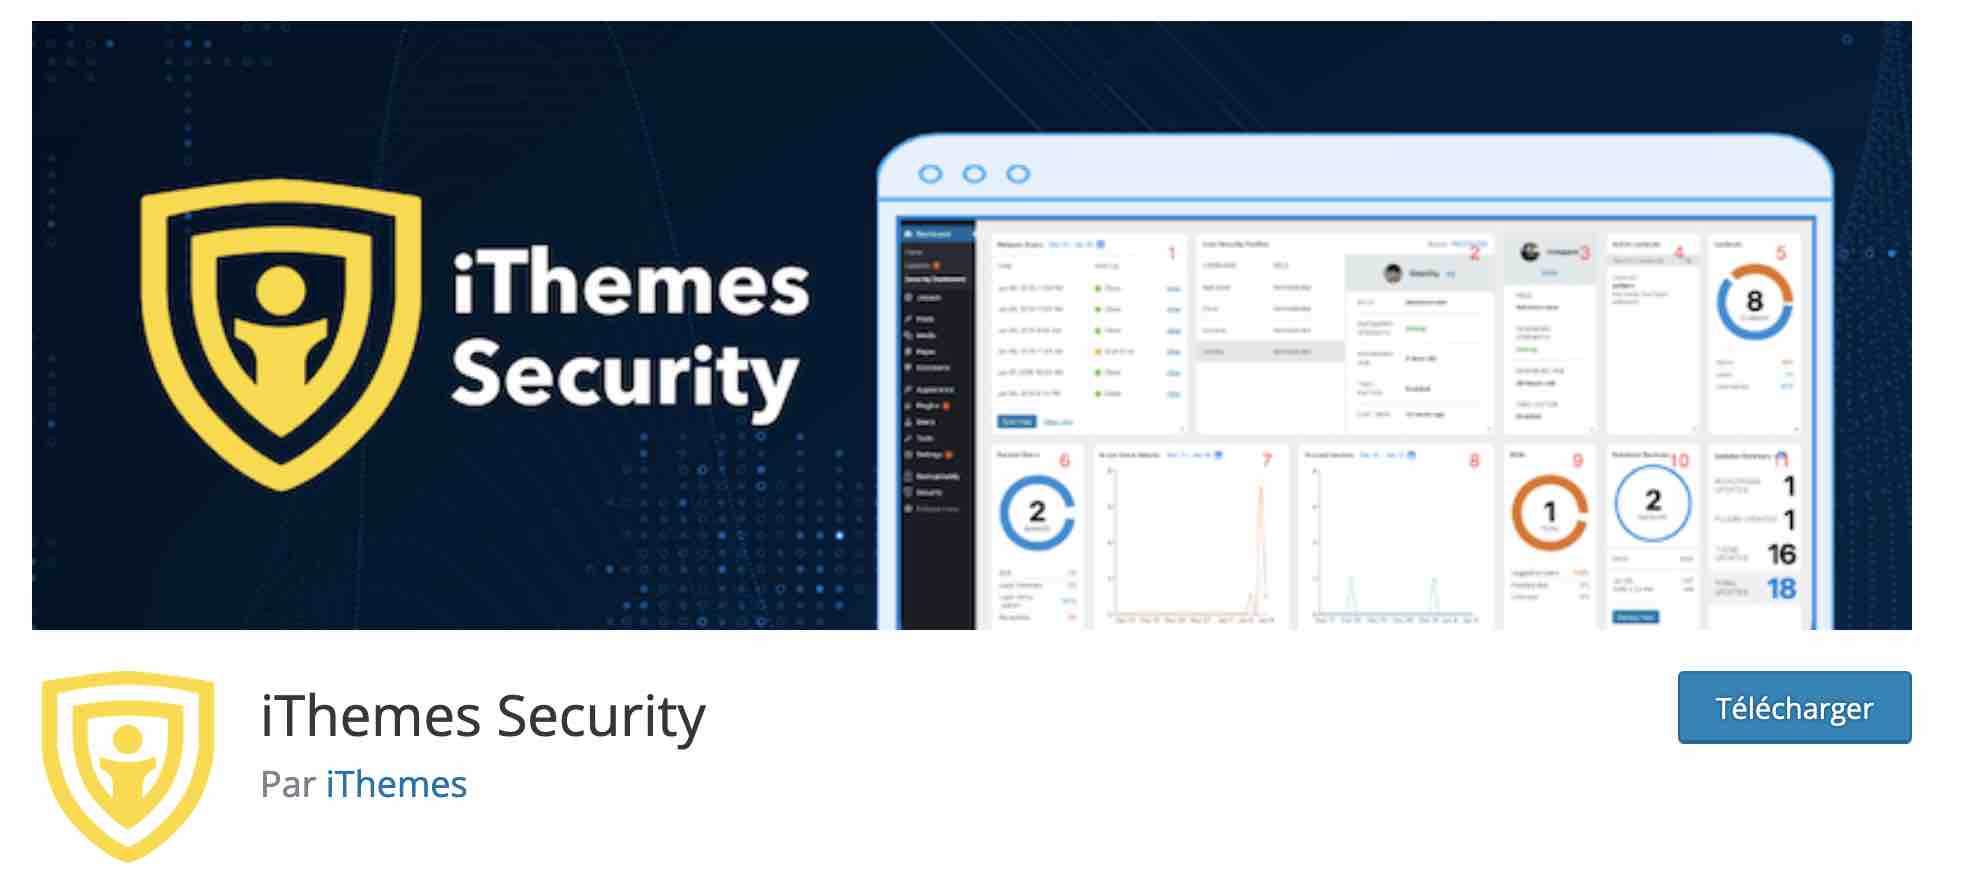 iThemes Security est une extension pour renforcer la sécurité de WordPress.